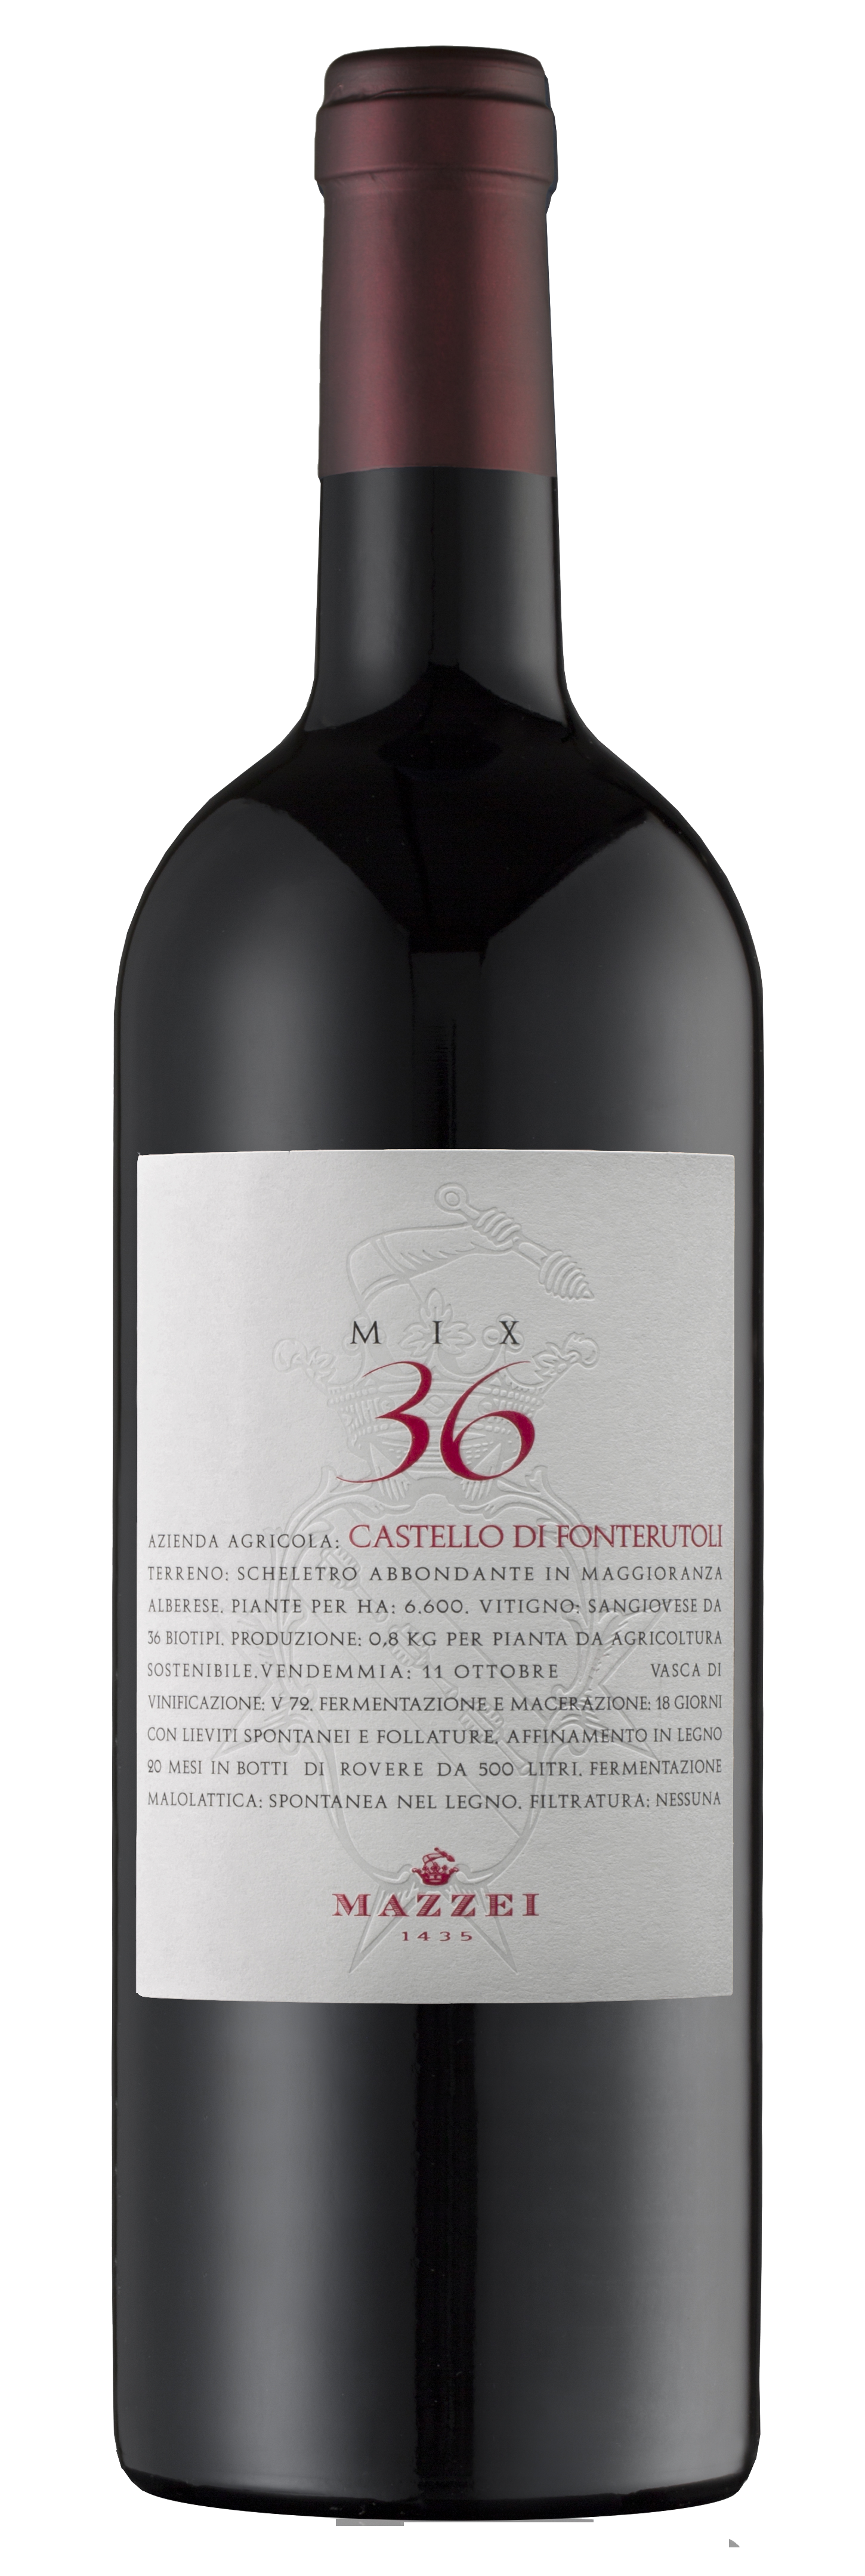 Bottle of Castello di Fonterutoli Mix 36 red wine